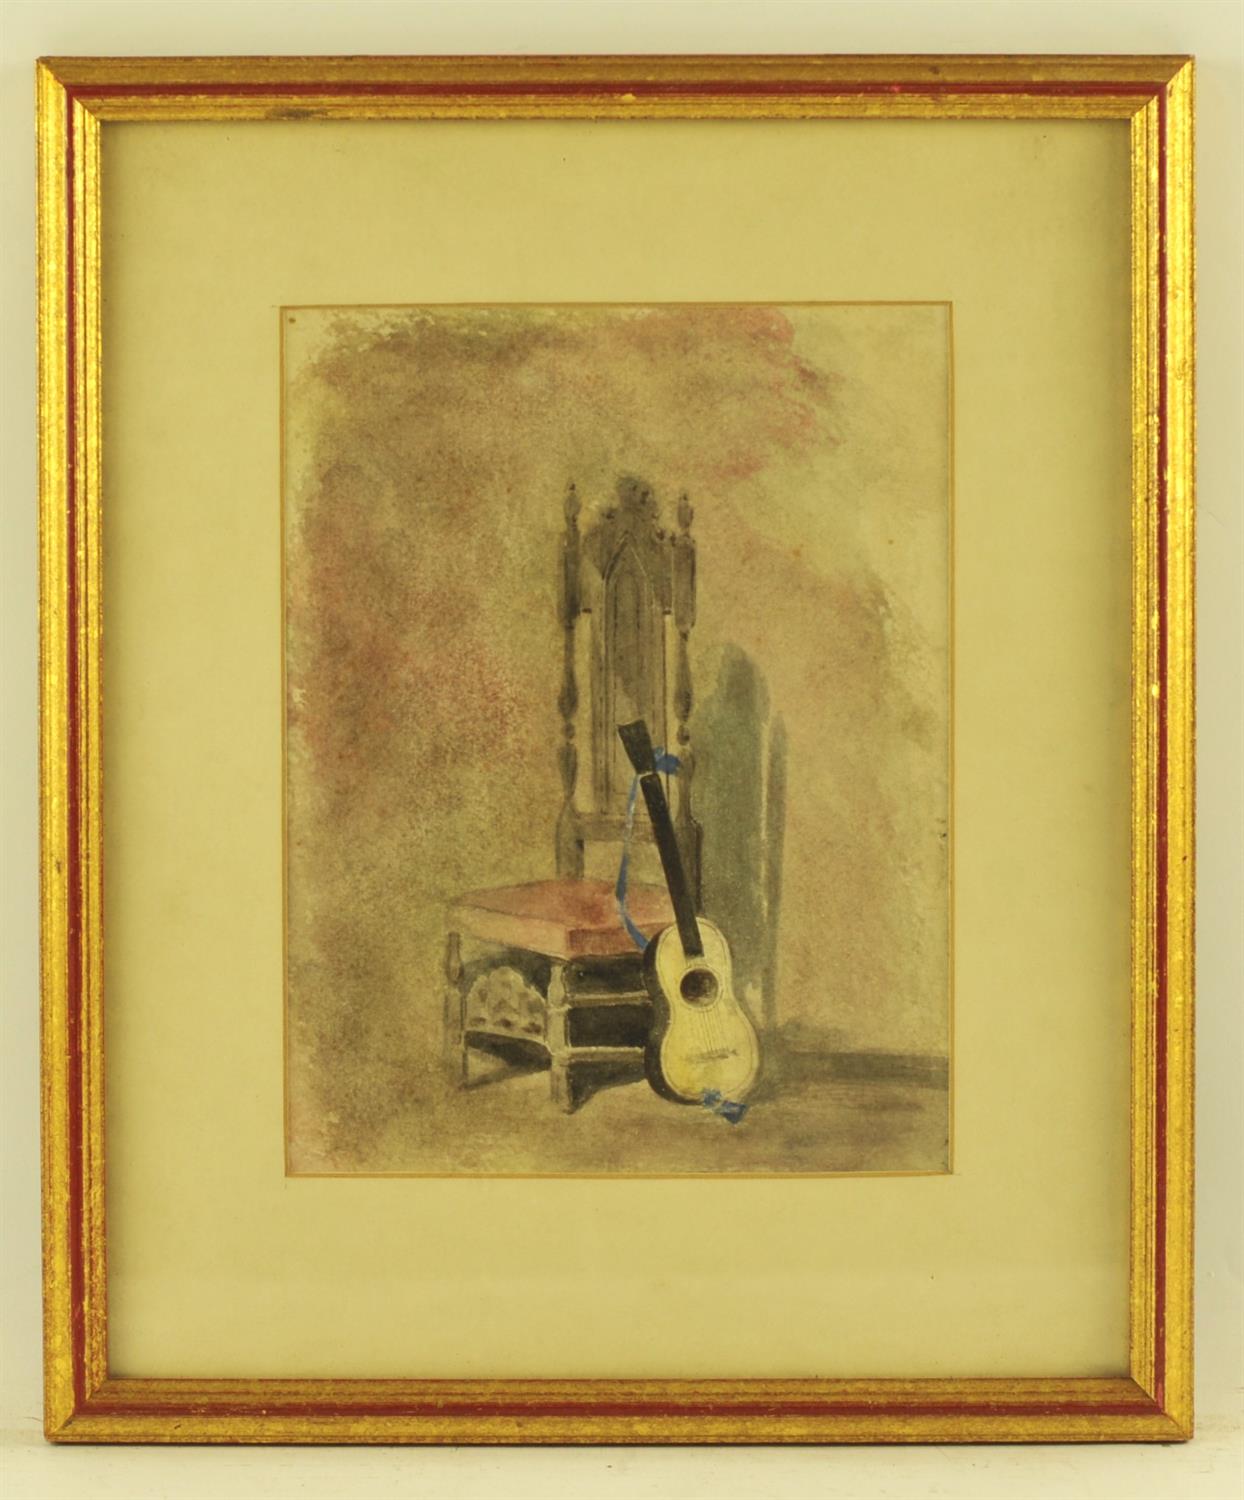 English School (19th/20th century), A Guitar leaning against a chair, watercolour,